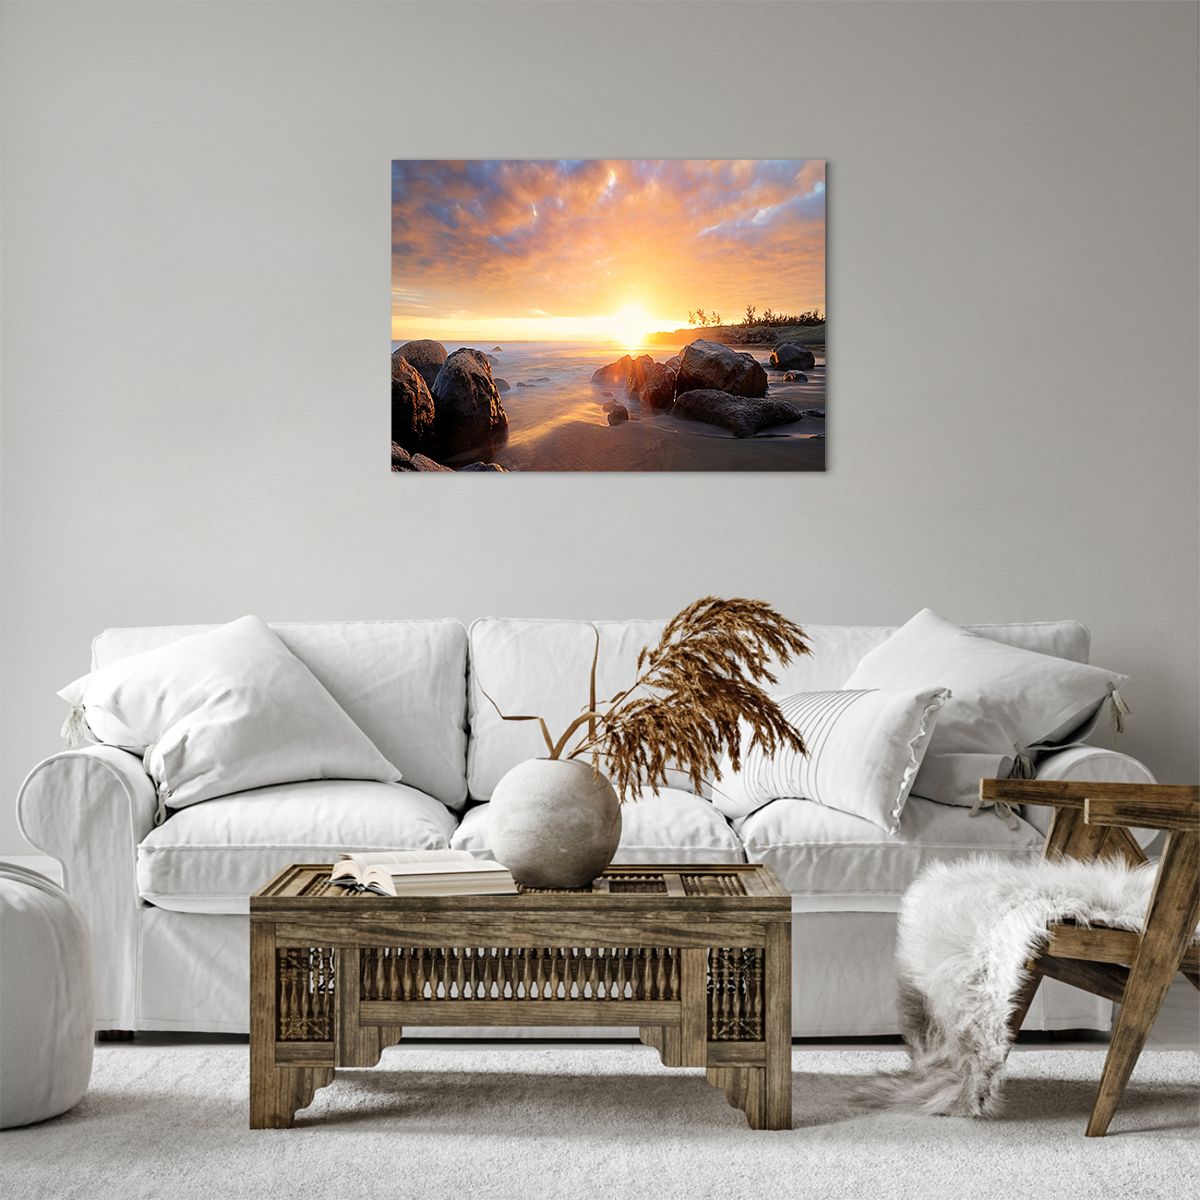 Bild auf Leinwand Landschaft, Bild auf Leinwand Meer, Bild auf Leinwand Sonnenaufgang, Bild auf Leinwand Küste, Bild auf Leinwand Natur